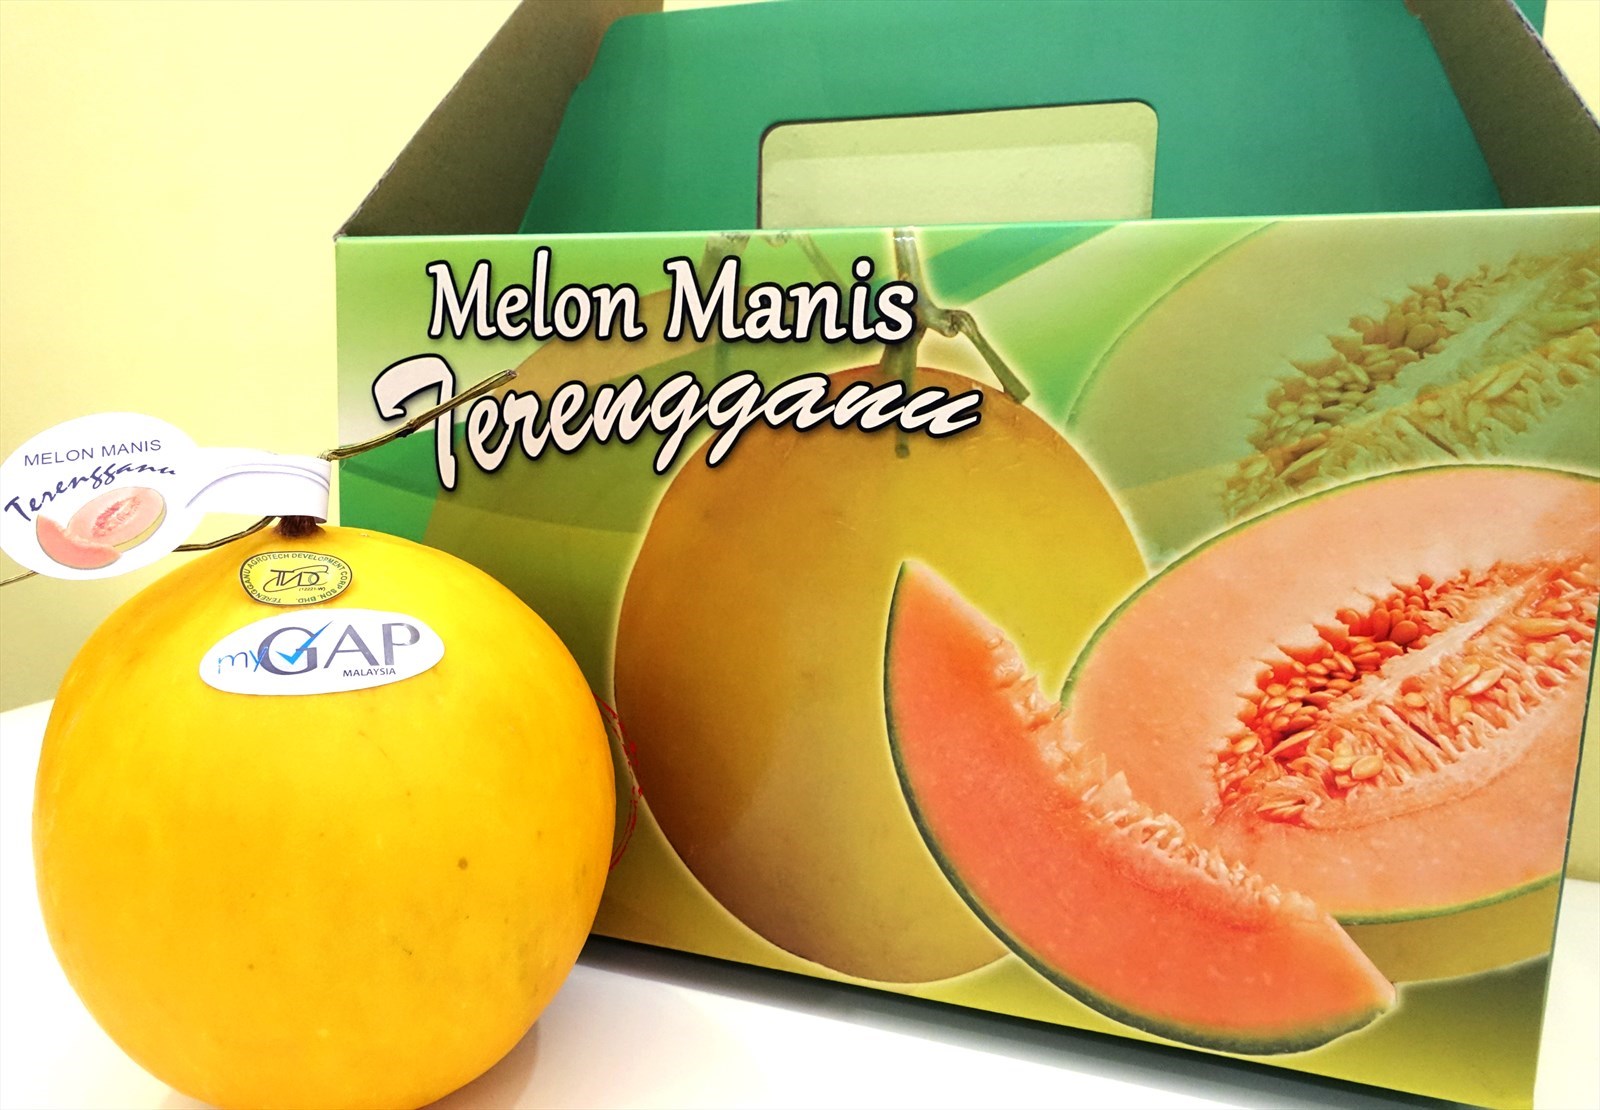  Terengganu’s Melon